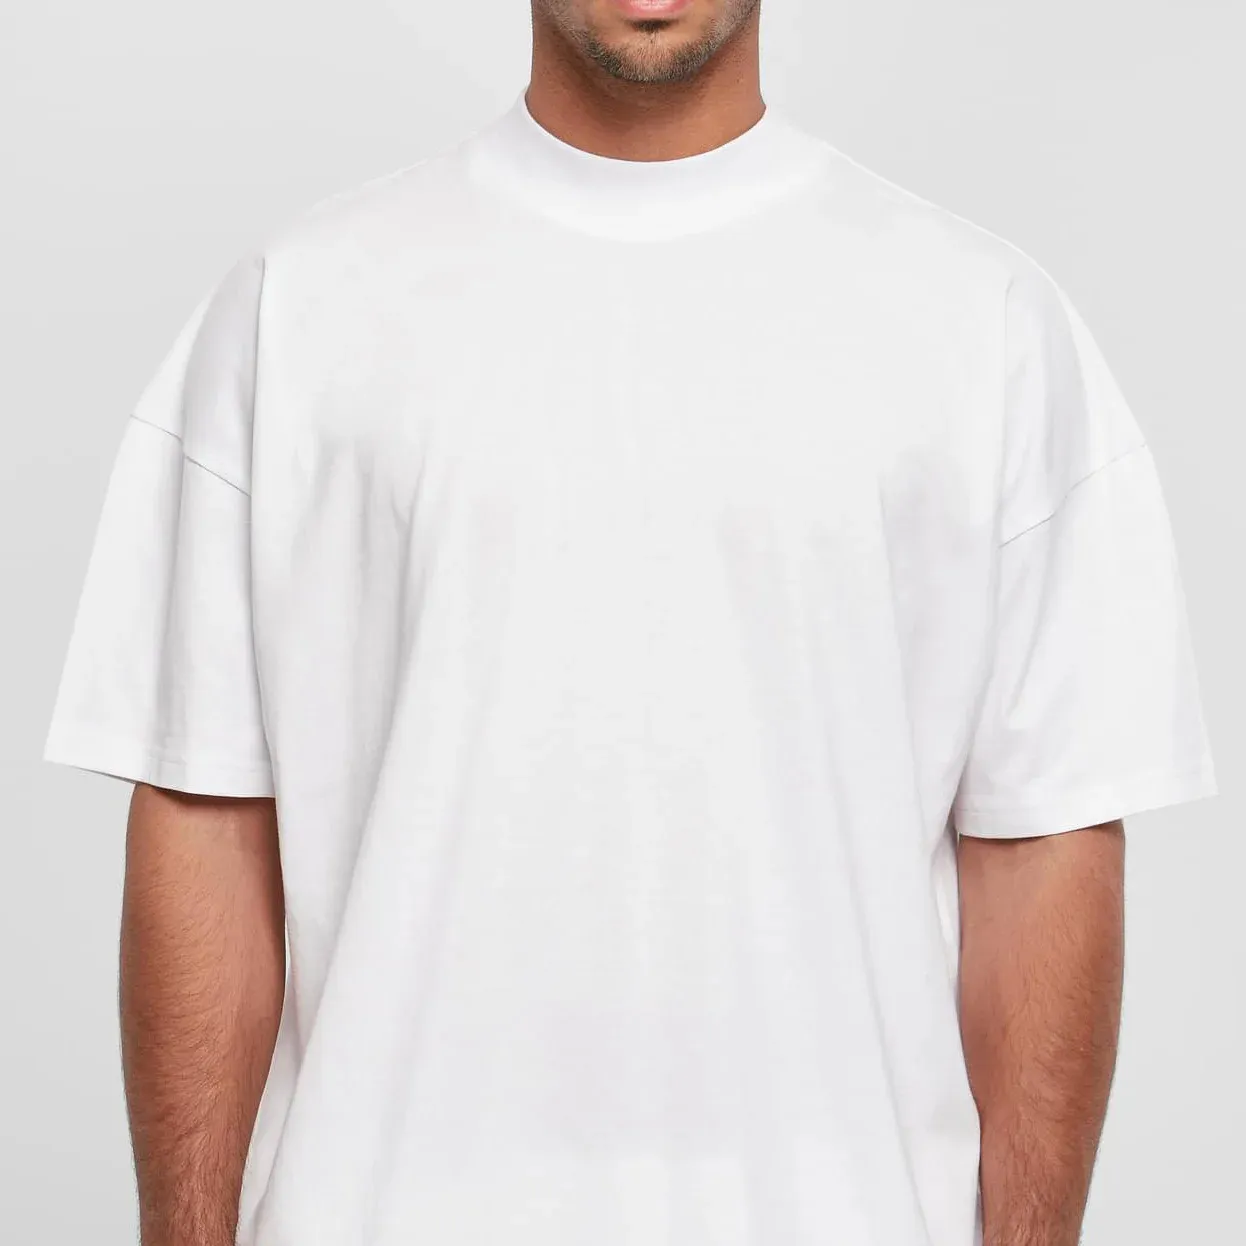 Top Italiano Qualidade Novo estilo sua própria marca Designer de Moda T Shirt Men Trendy Blanc Tshirt Casual Oversize T-shirt